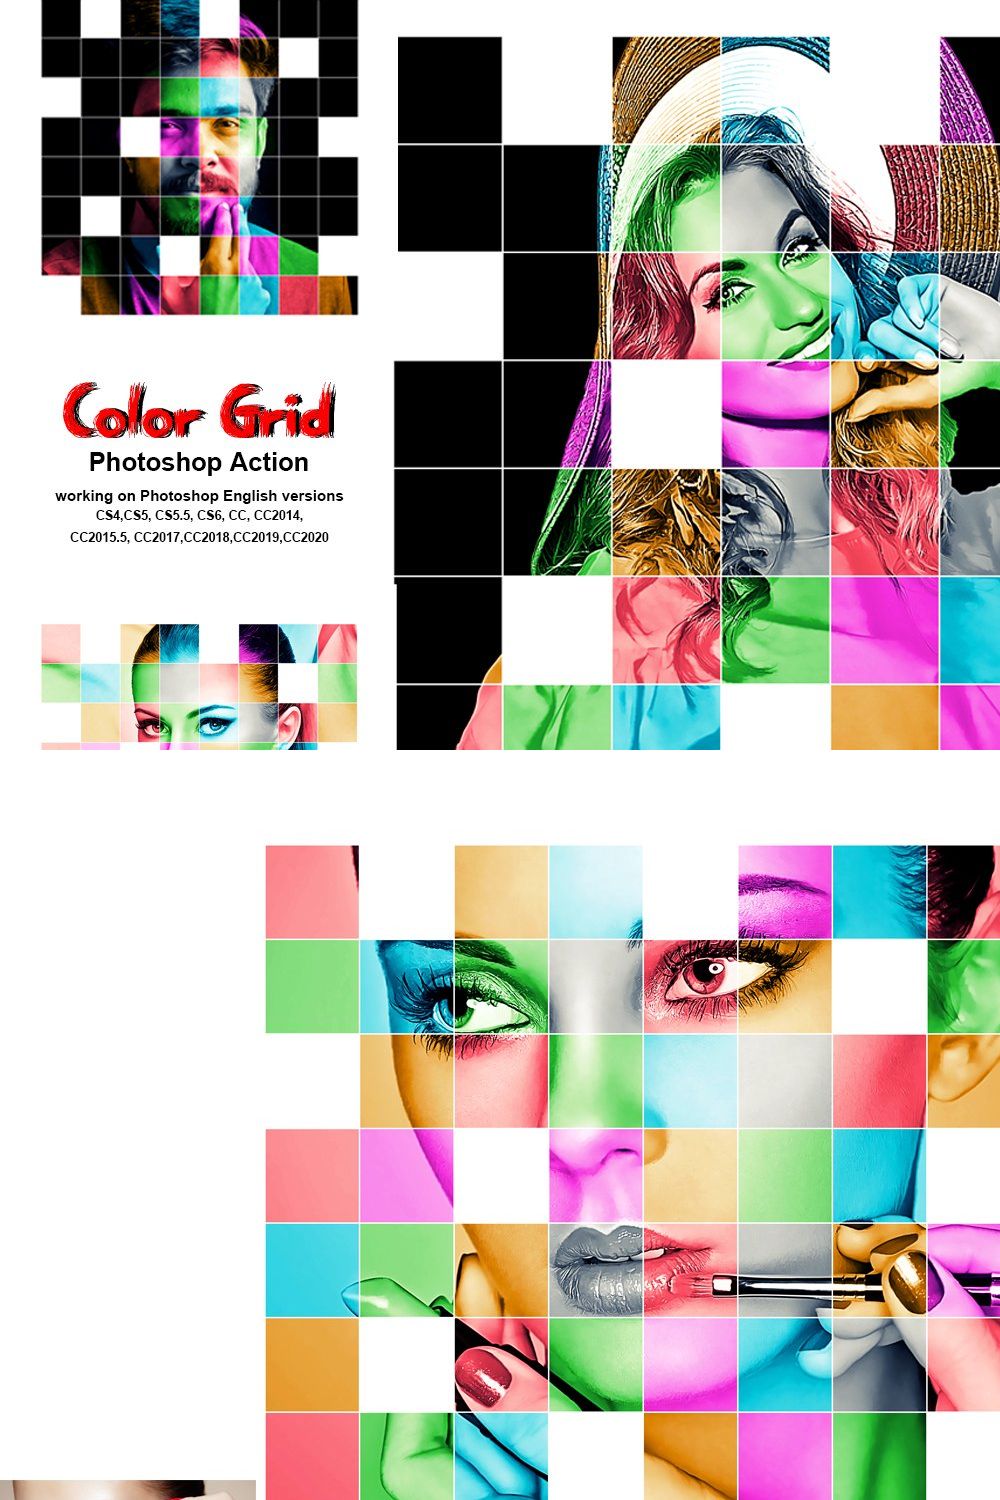 Color Grid Photoshop Action pinterest preview image.